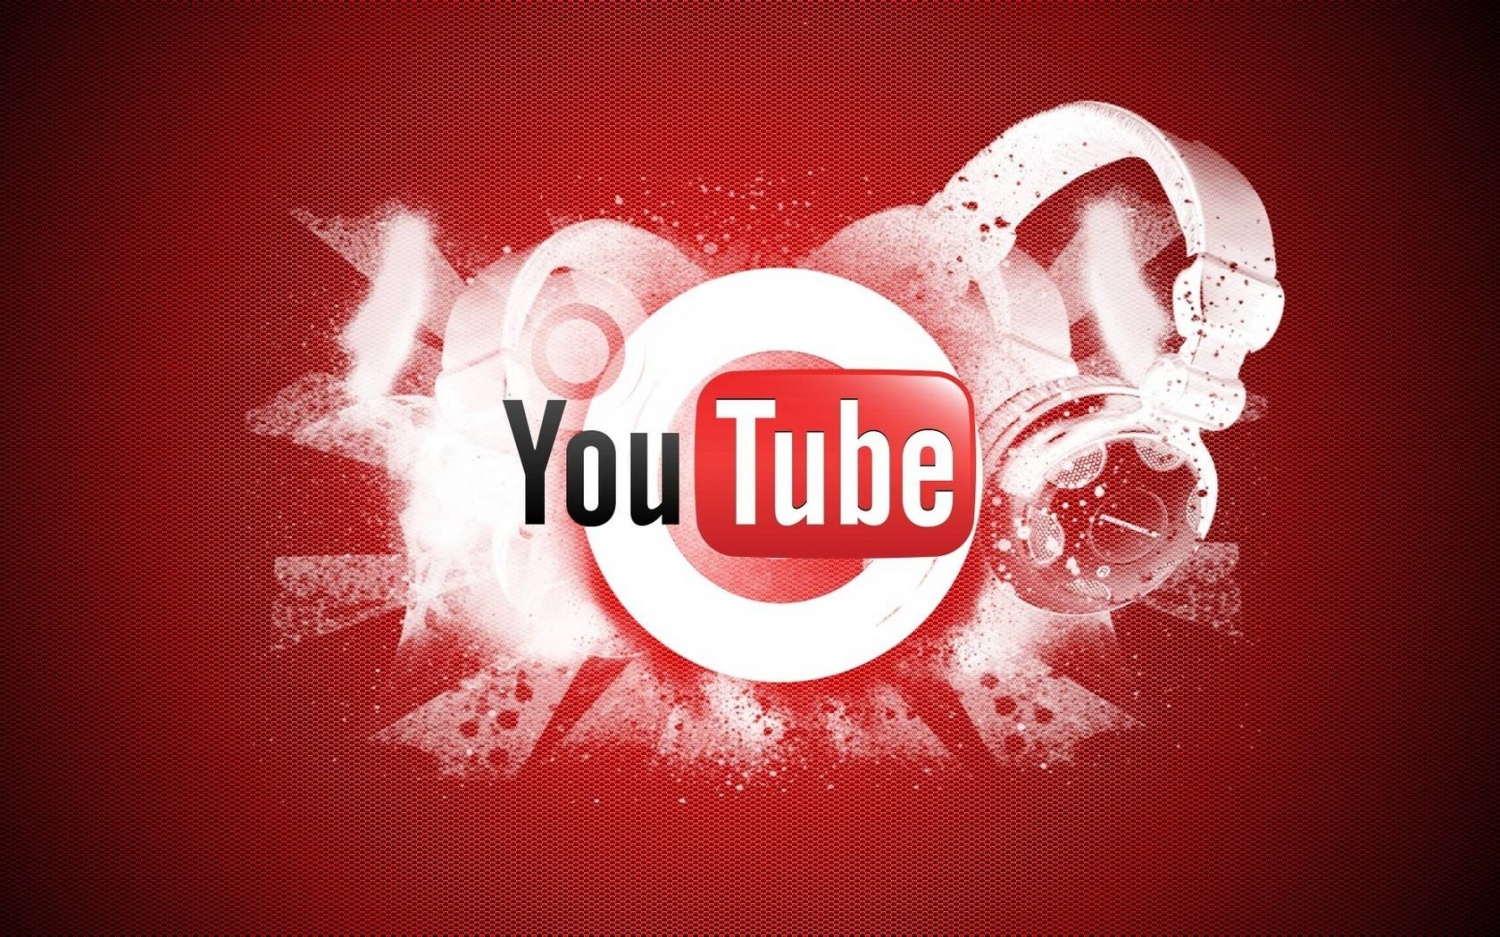 Популярные YouTube каналы кладоискателей и металлоискатели